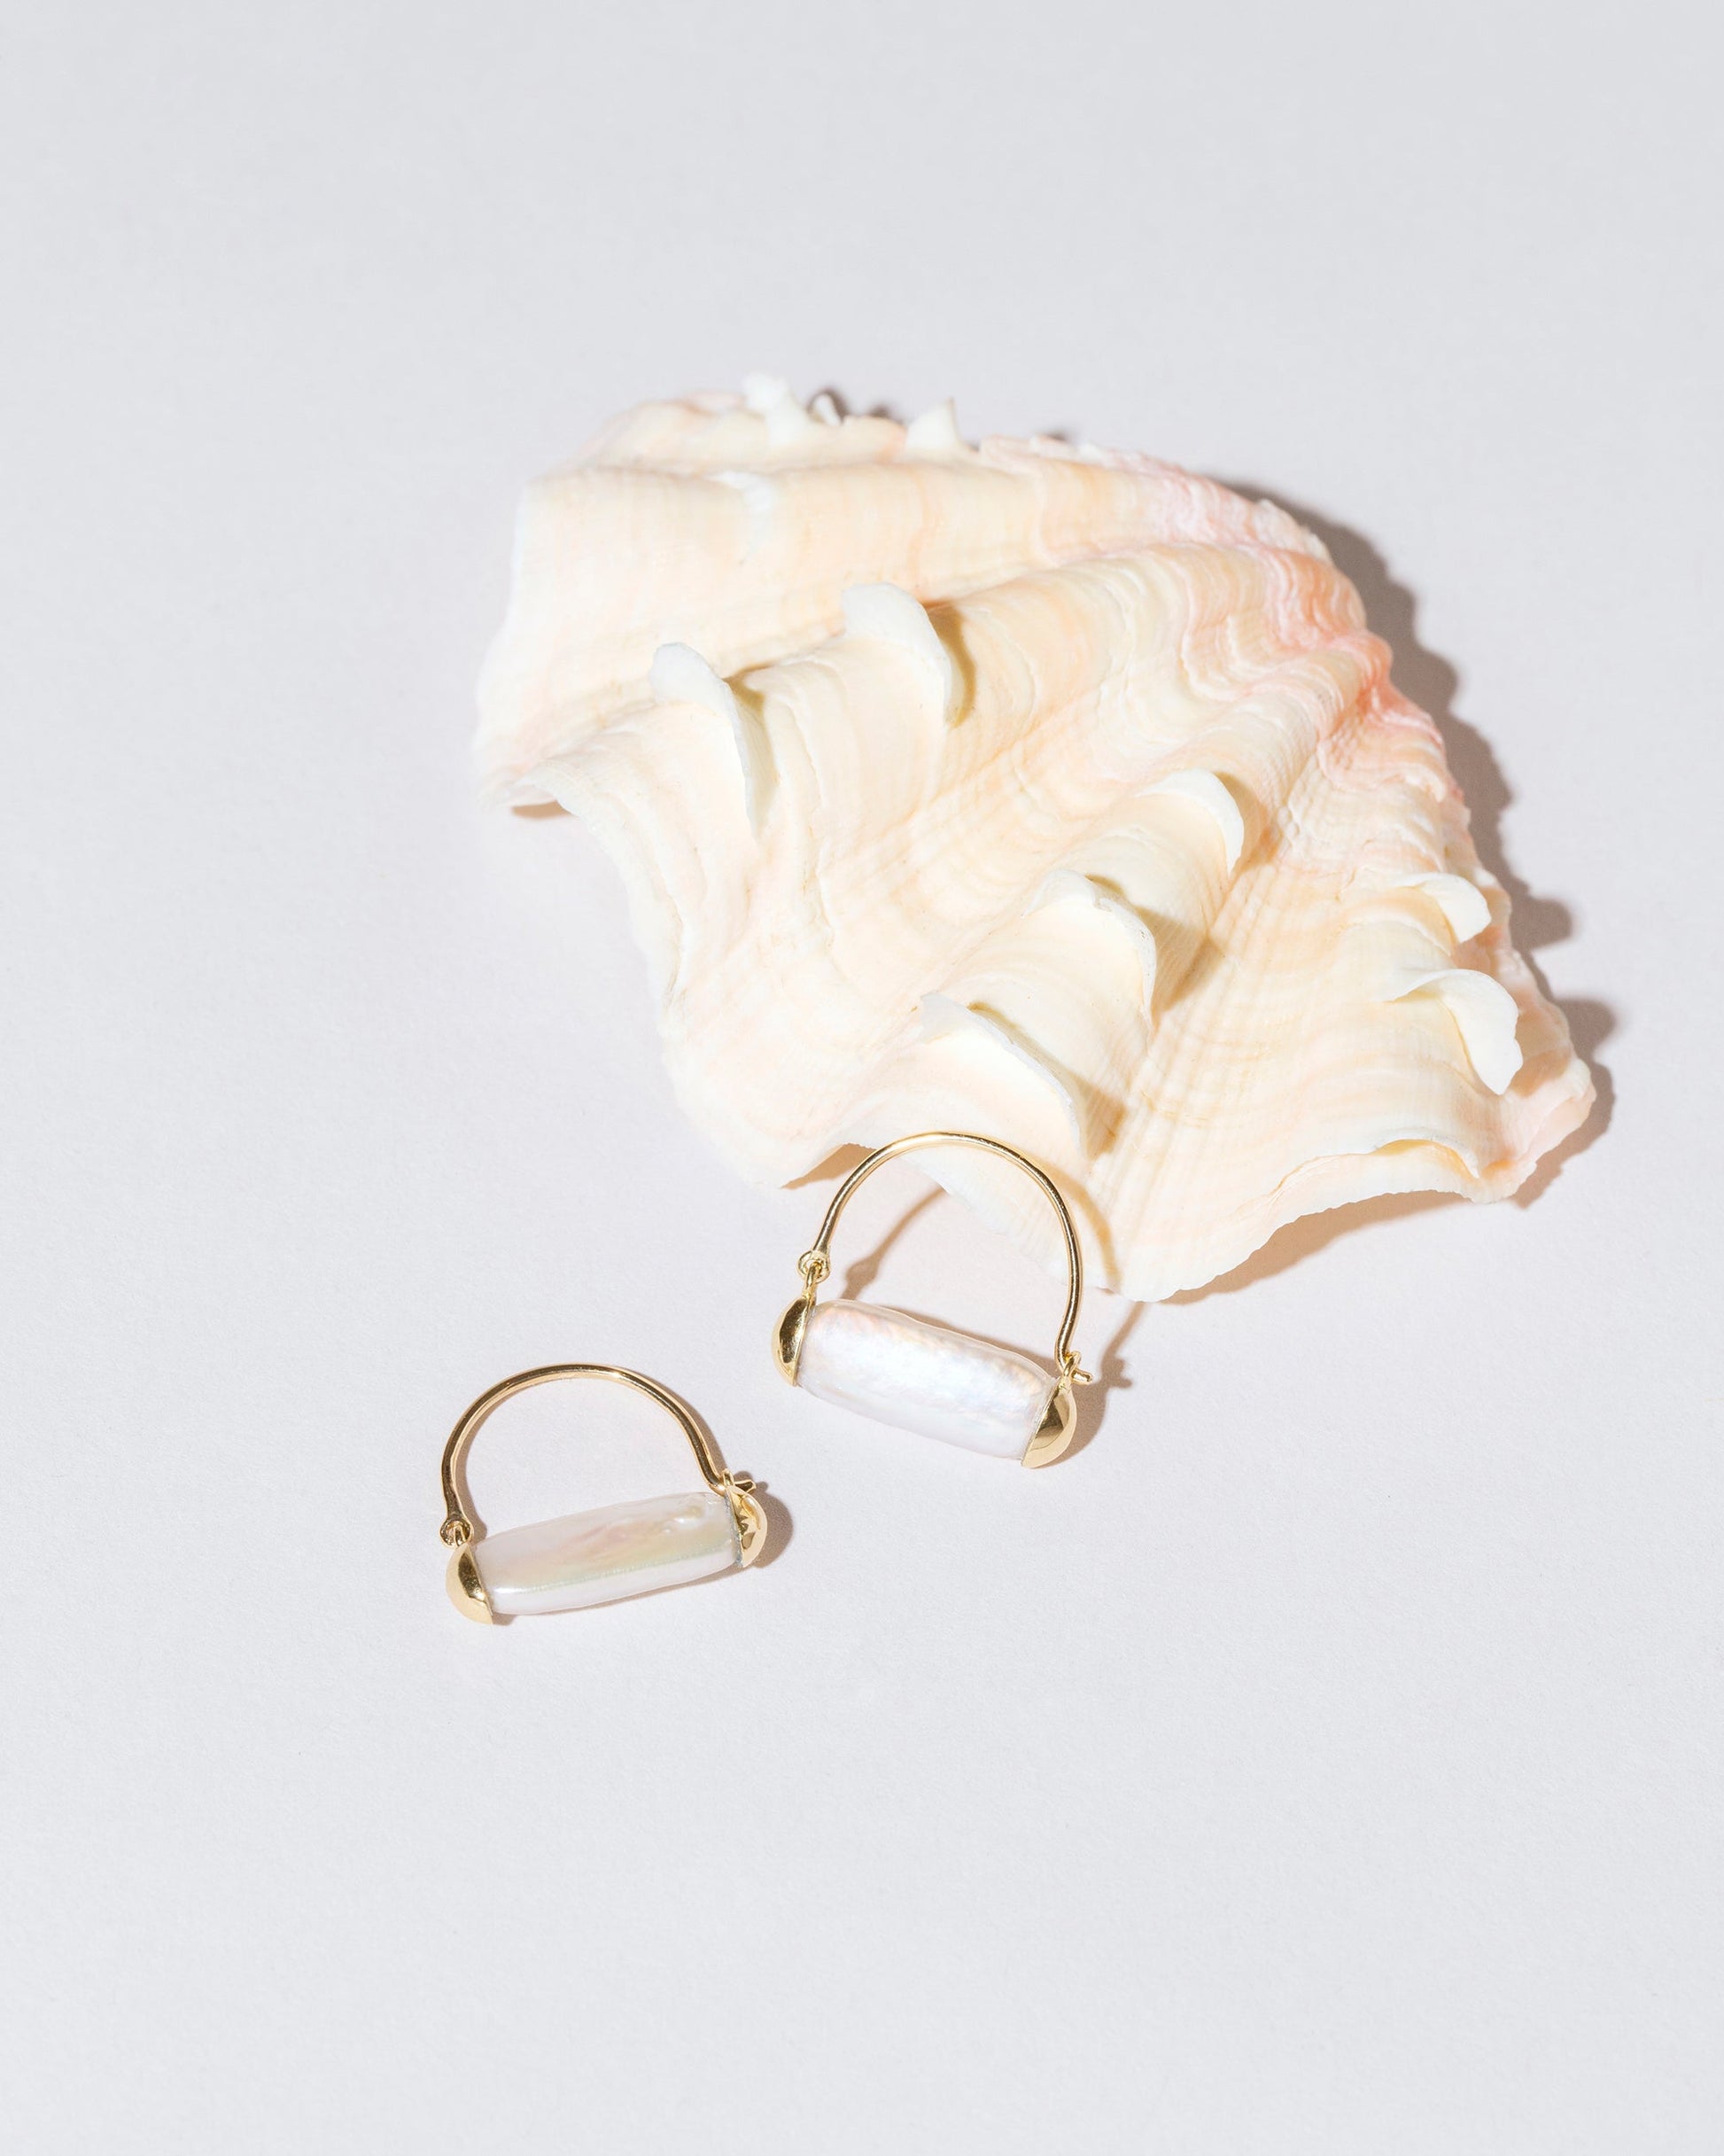  Pearl Hoop Earrings on light color background.